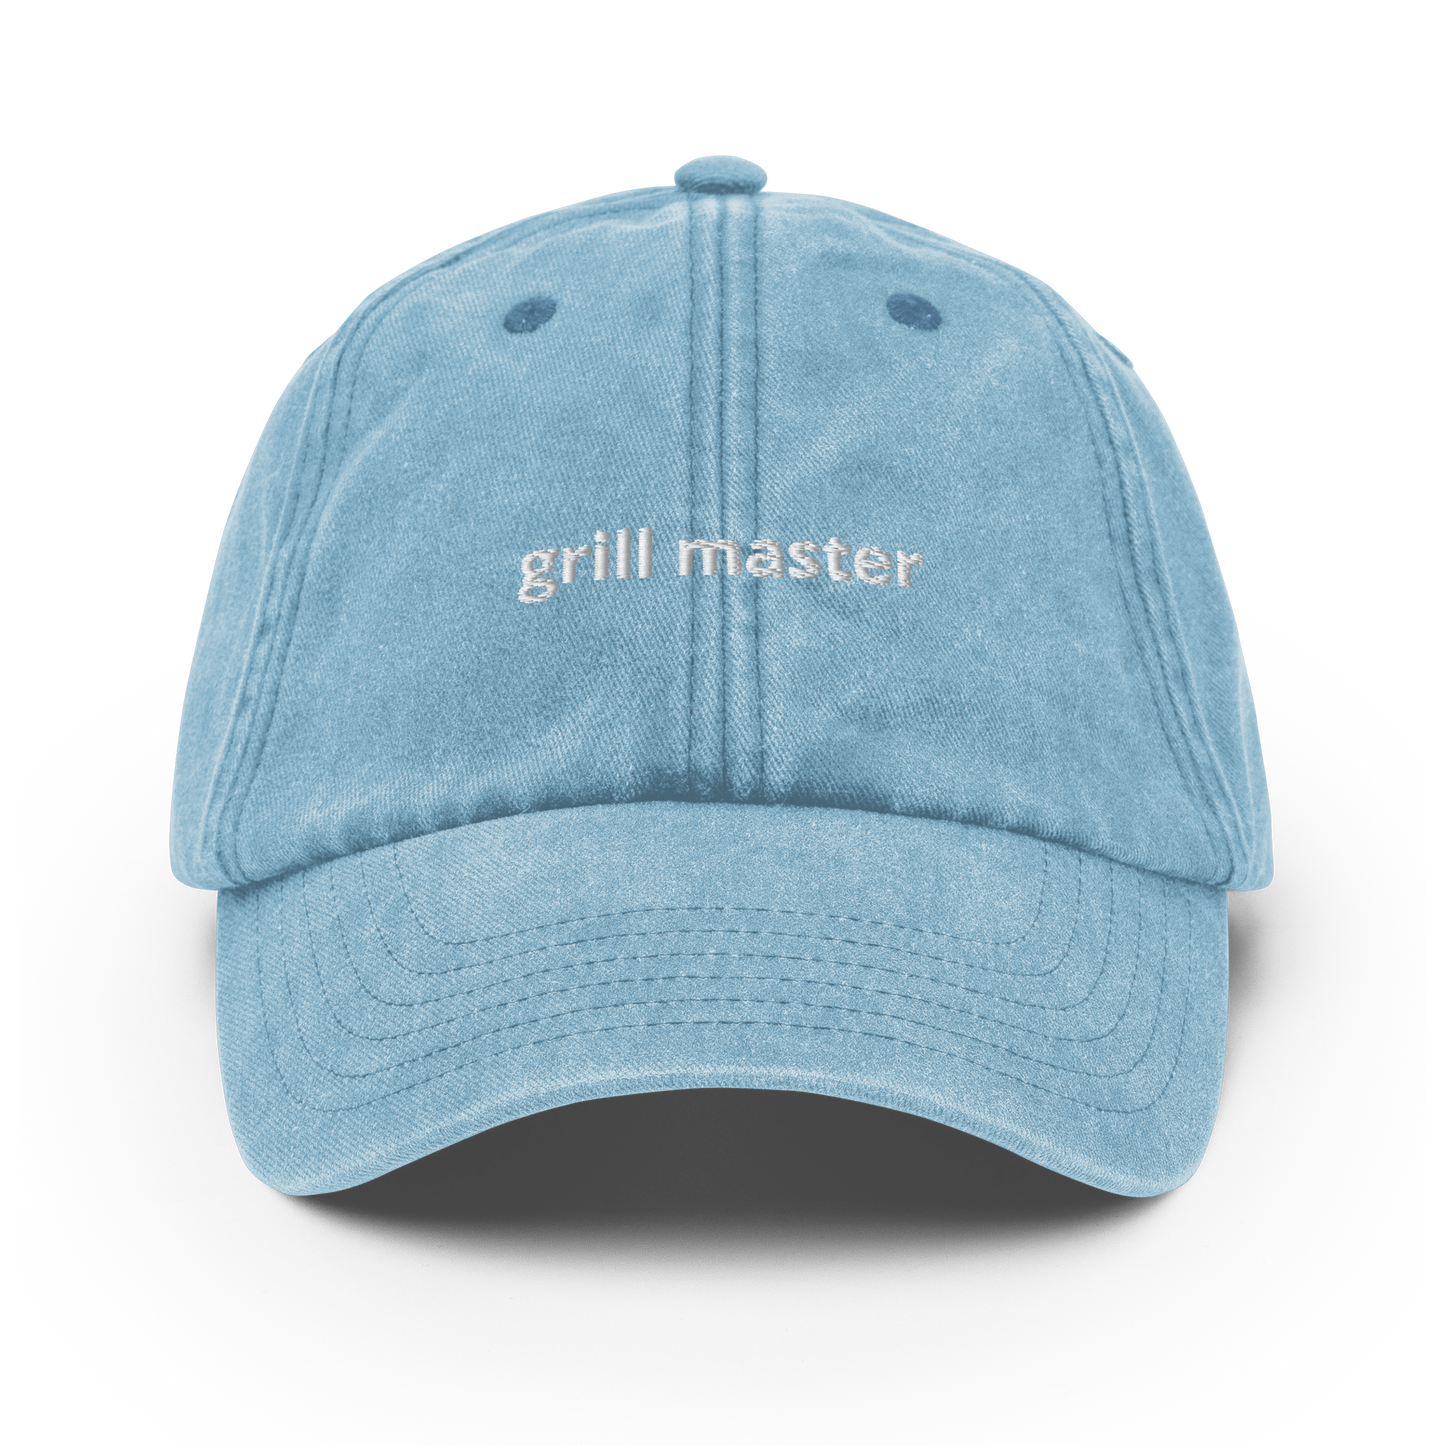 Grill Master - Vintage Hat